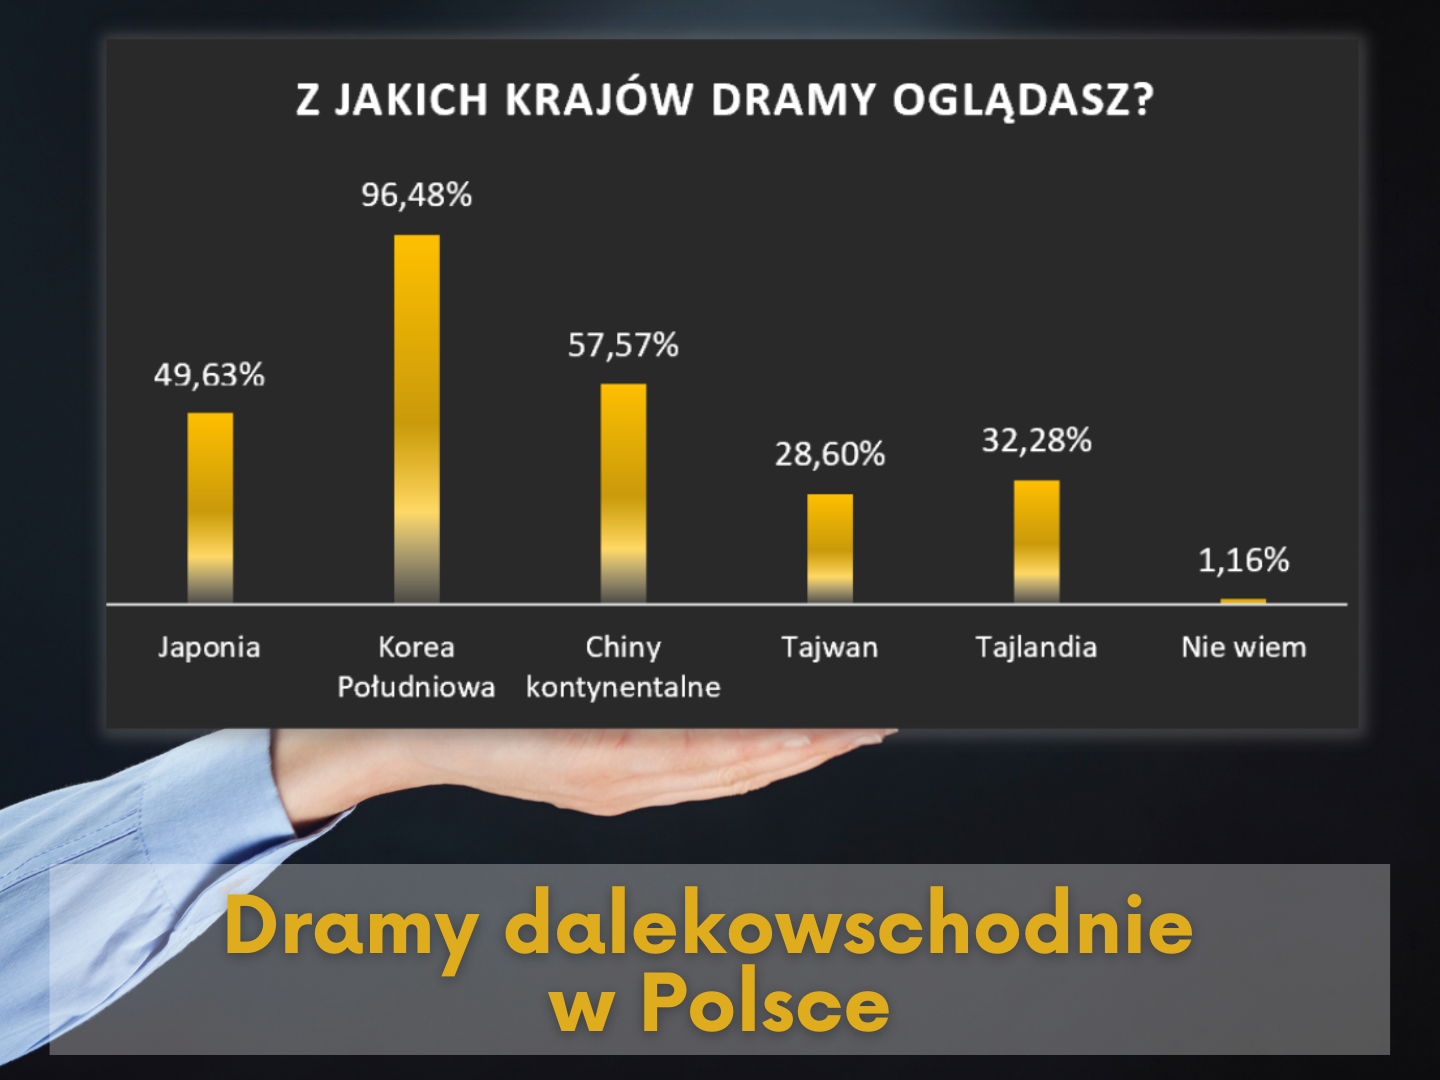 Dramy dalekowschodnie w Polsce – opracowanie wyników ankiety (1/2)